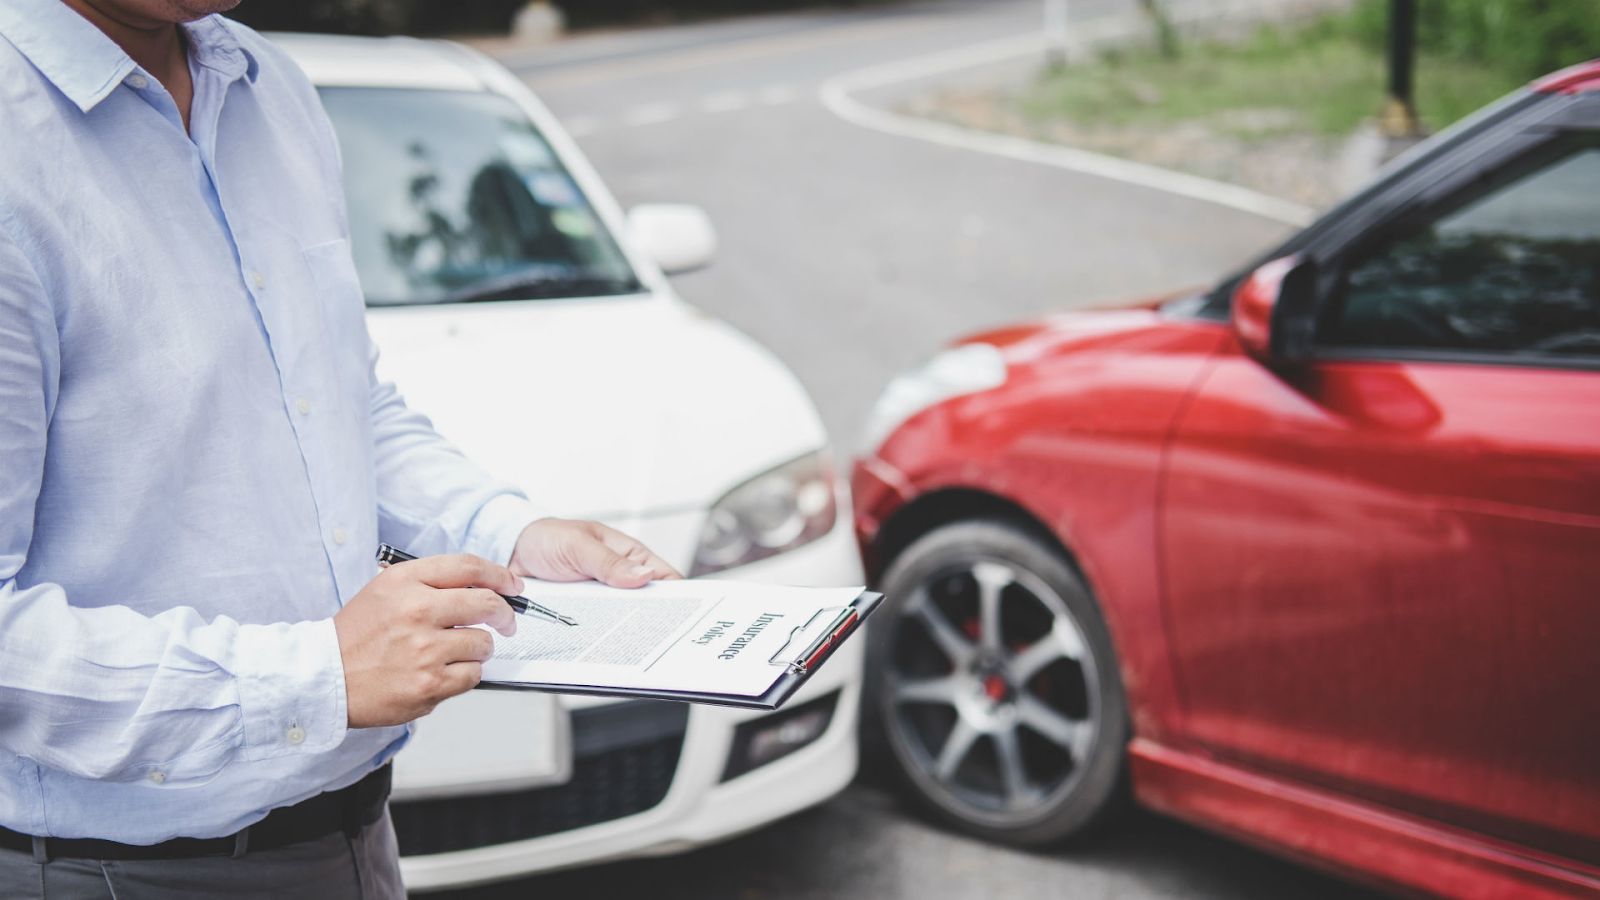 Khi mua ô tô bạn cần phải có những loại bảo hiểm nào? - Hình 1